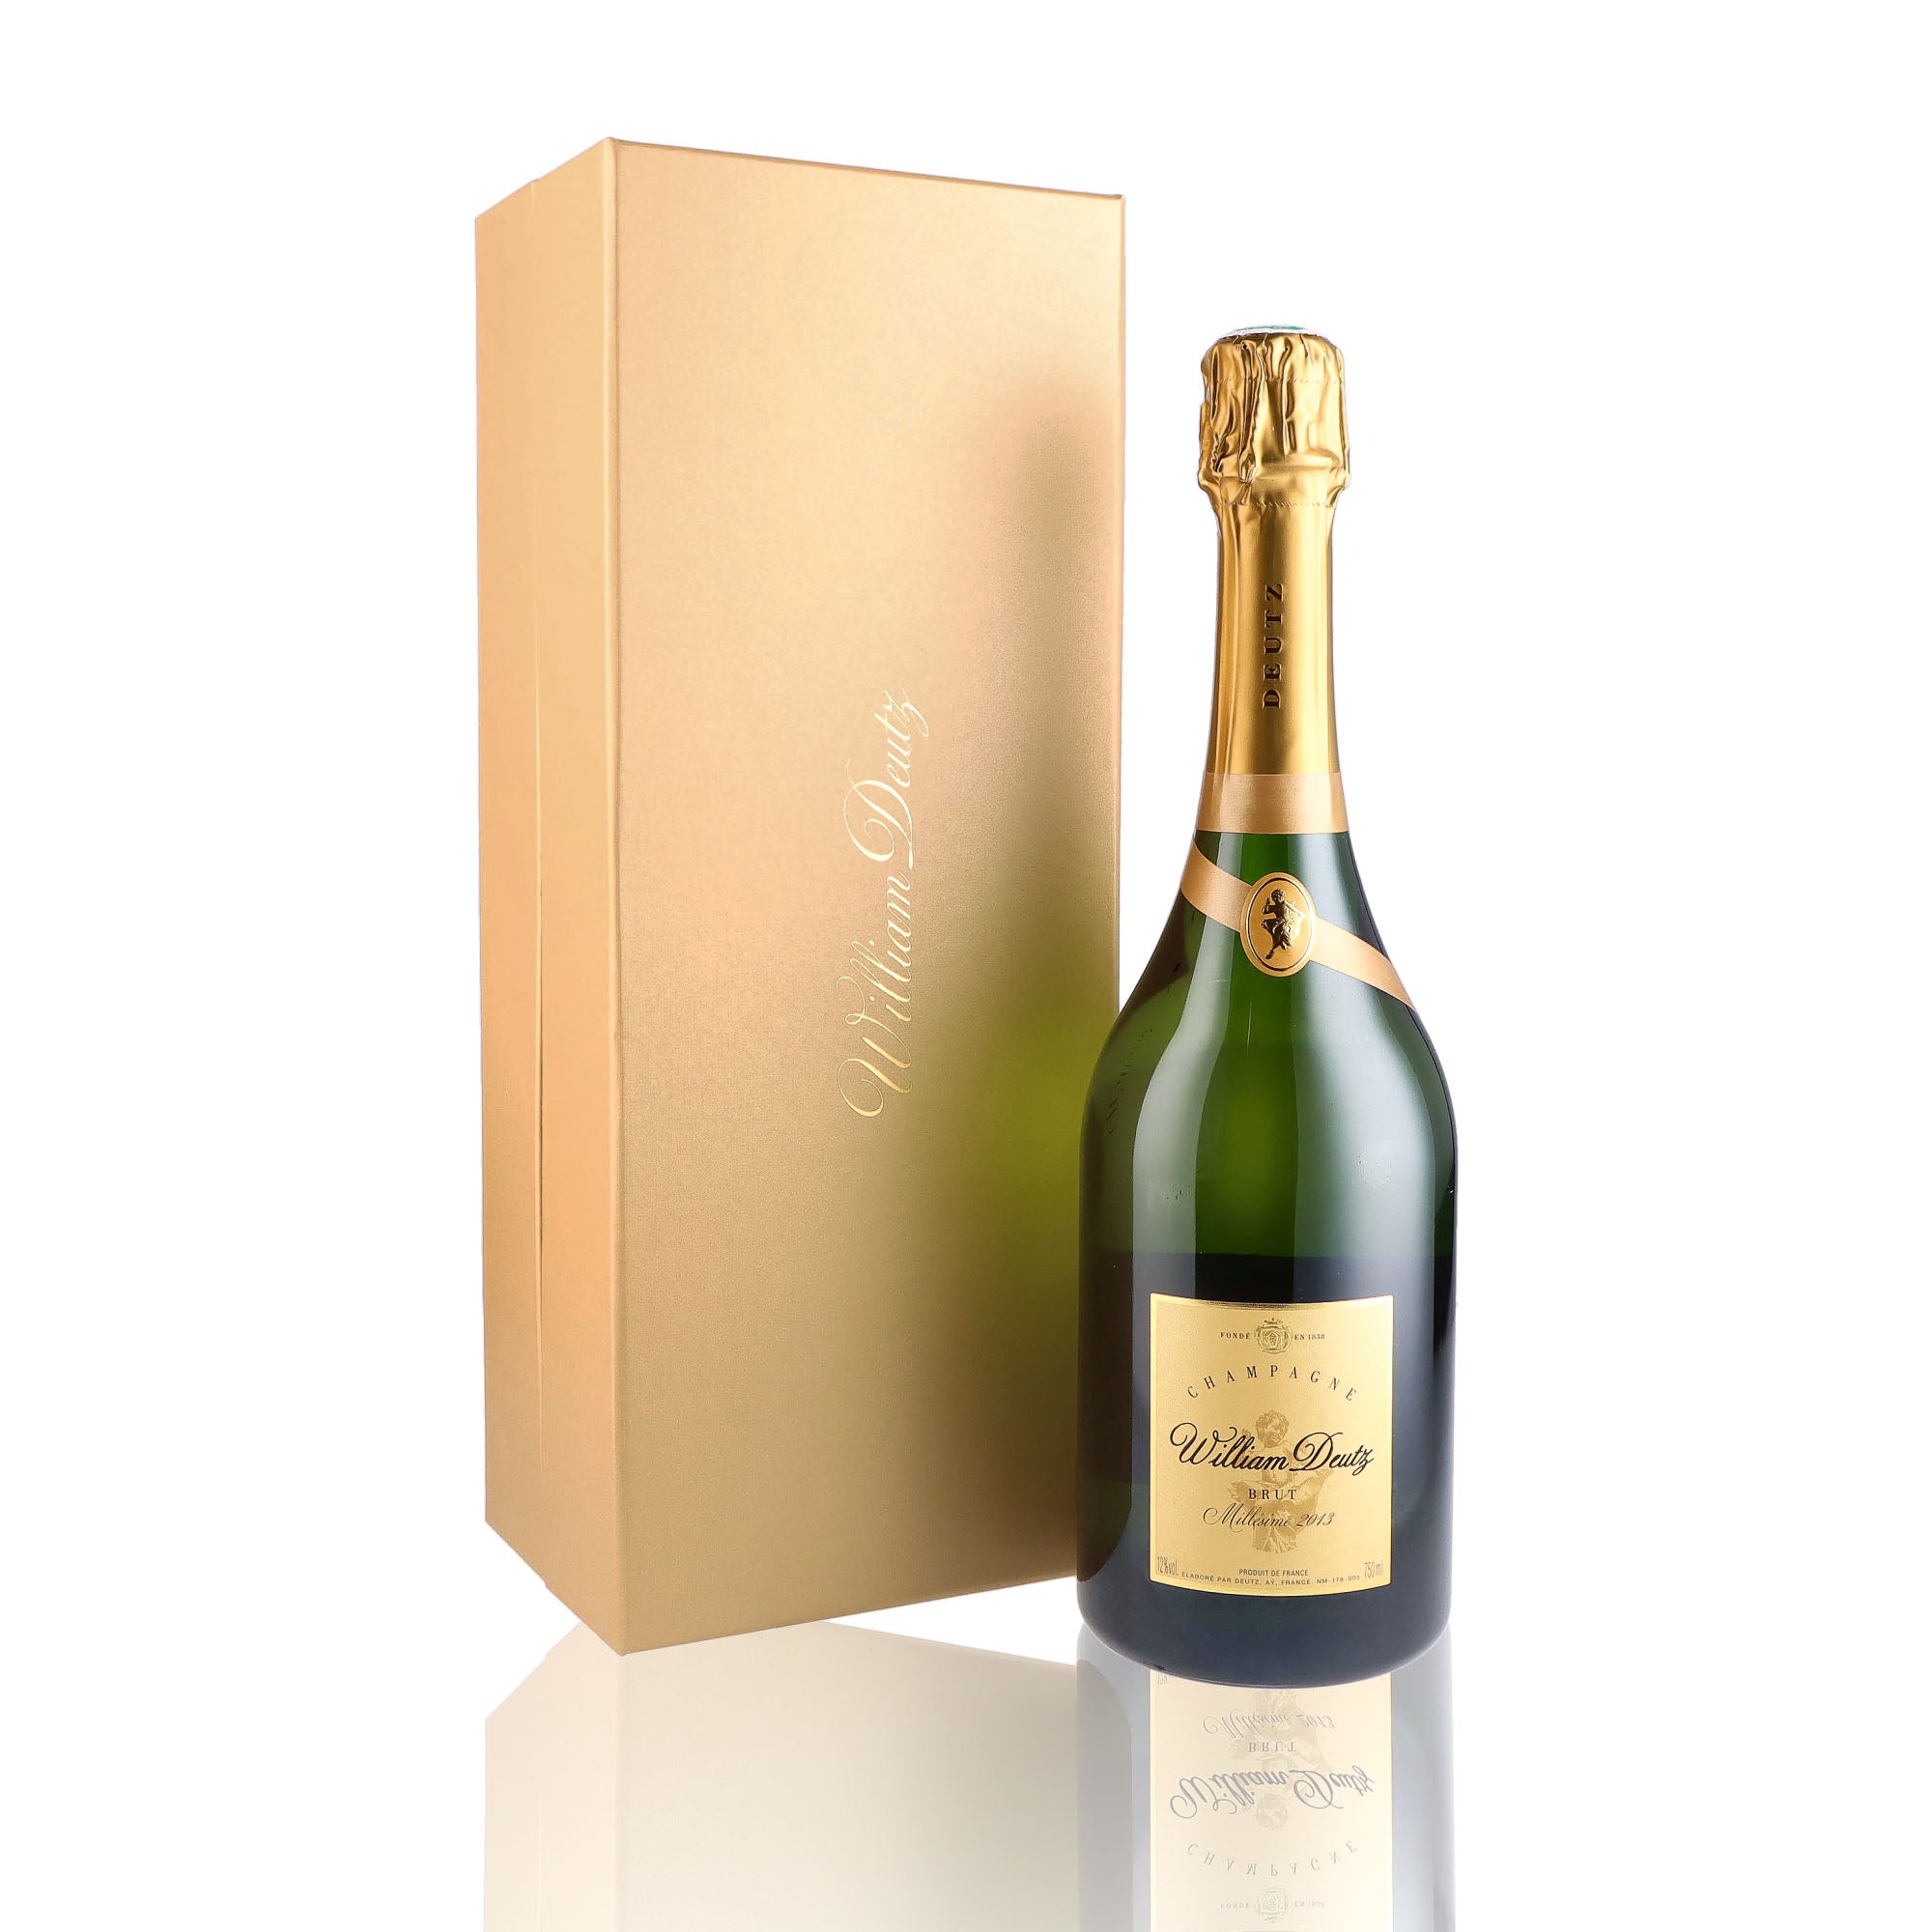 Une bouteille de champagne de la marque Deutz, de type brut, nommée cuvée william deutz, millésime 2013.